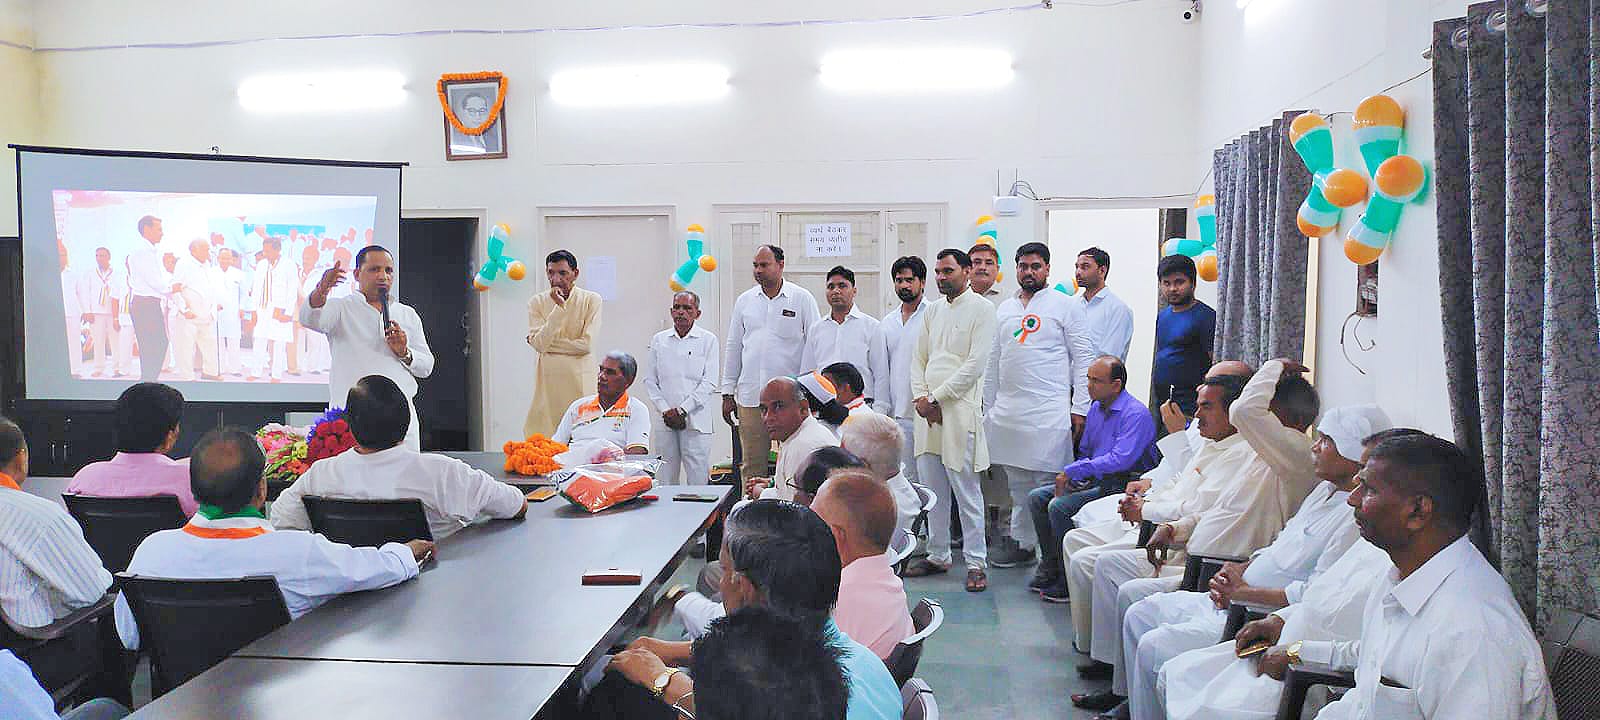 Noida News : सेक्टर-37 के अंबेडकर विहार स्थित डॉ. भीमराव अंबेडकर लाइब्रेरी में शान से लहराया तिरंगा